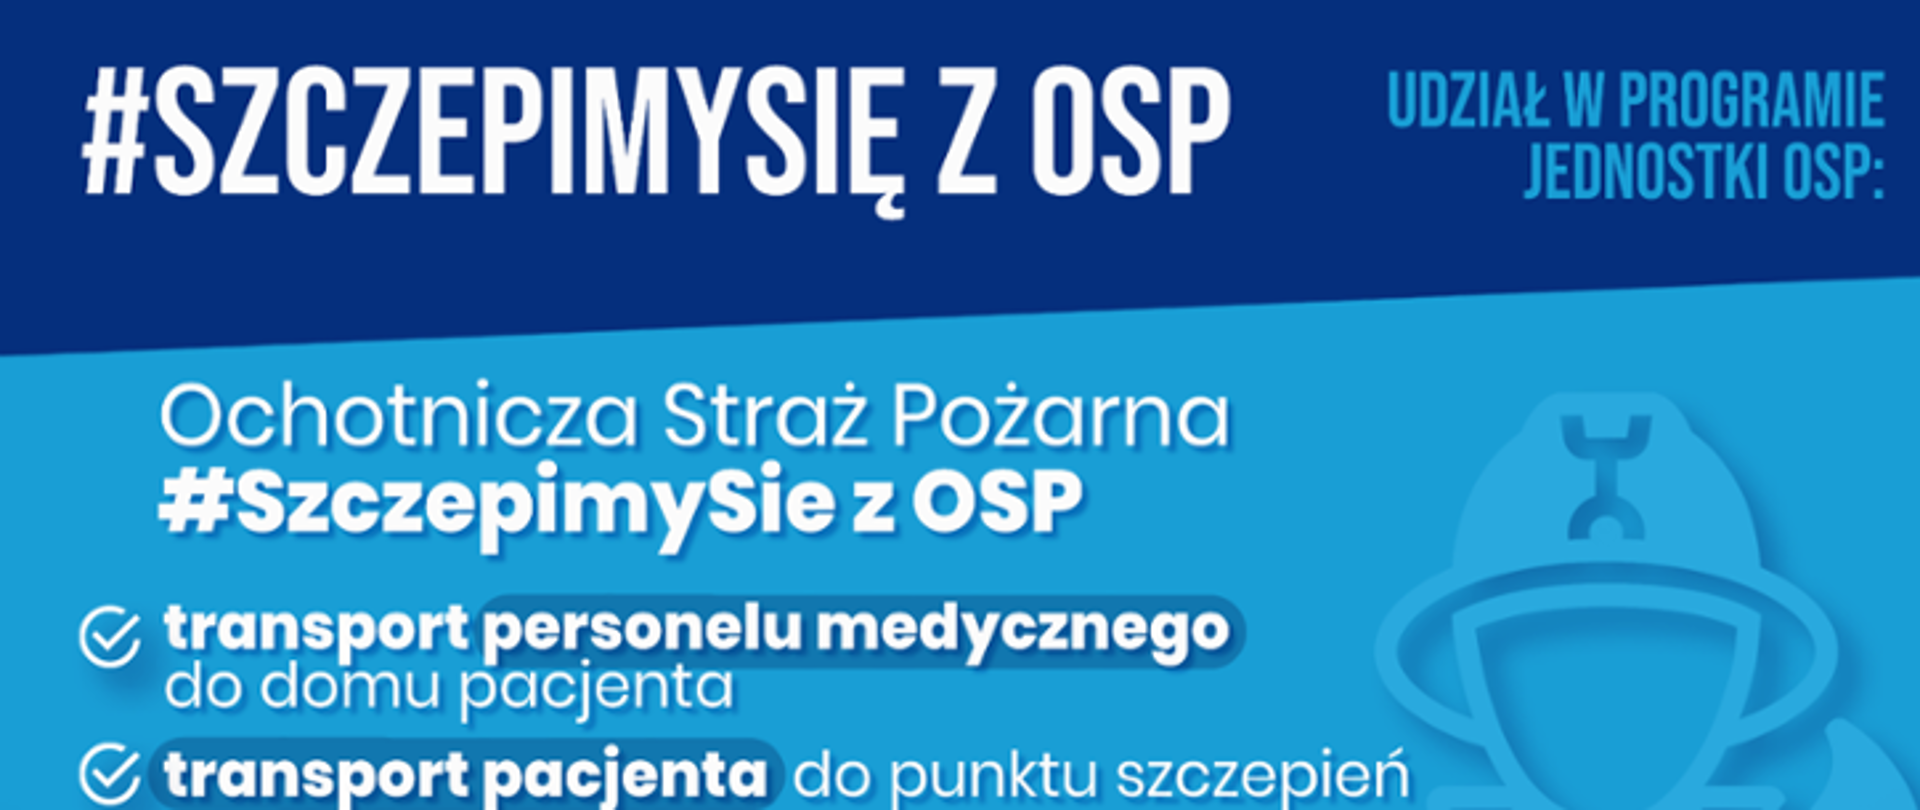 Plakat akcji szczepimy się z OSP